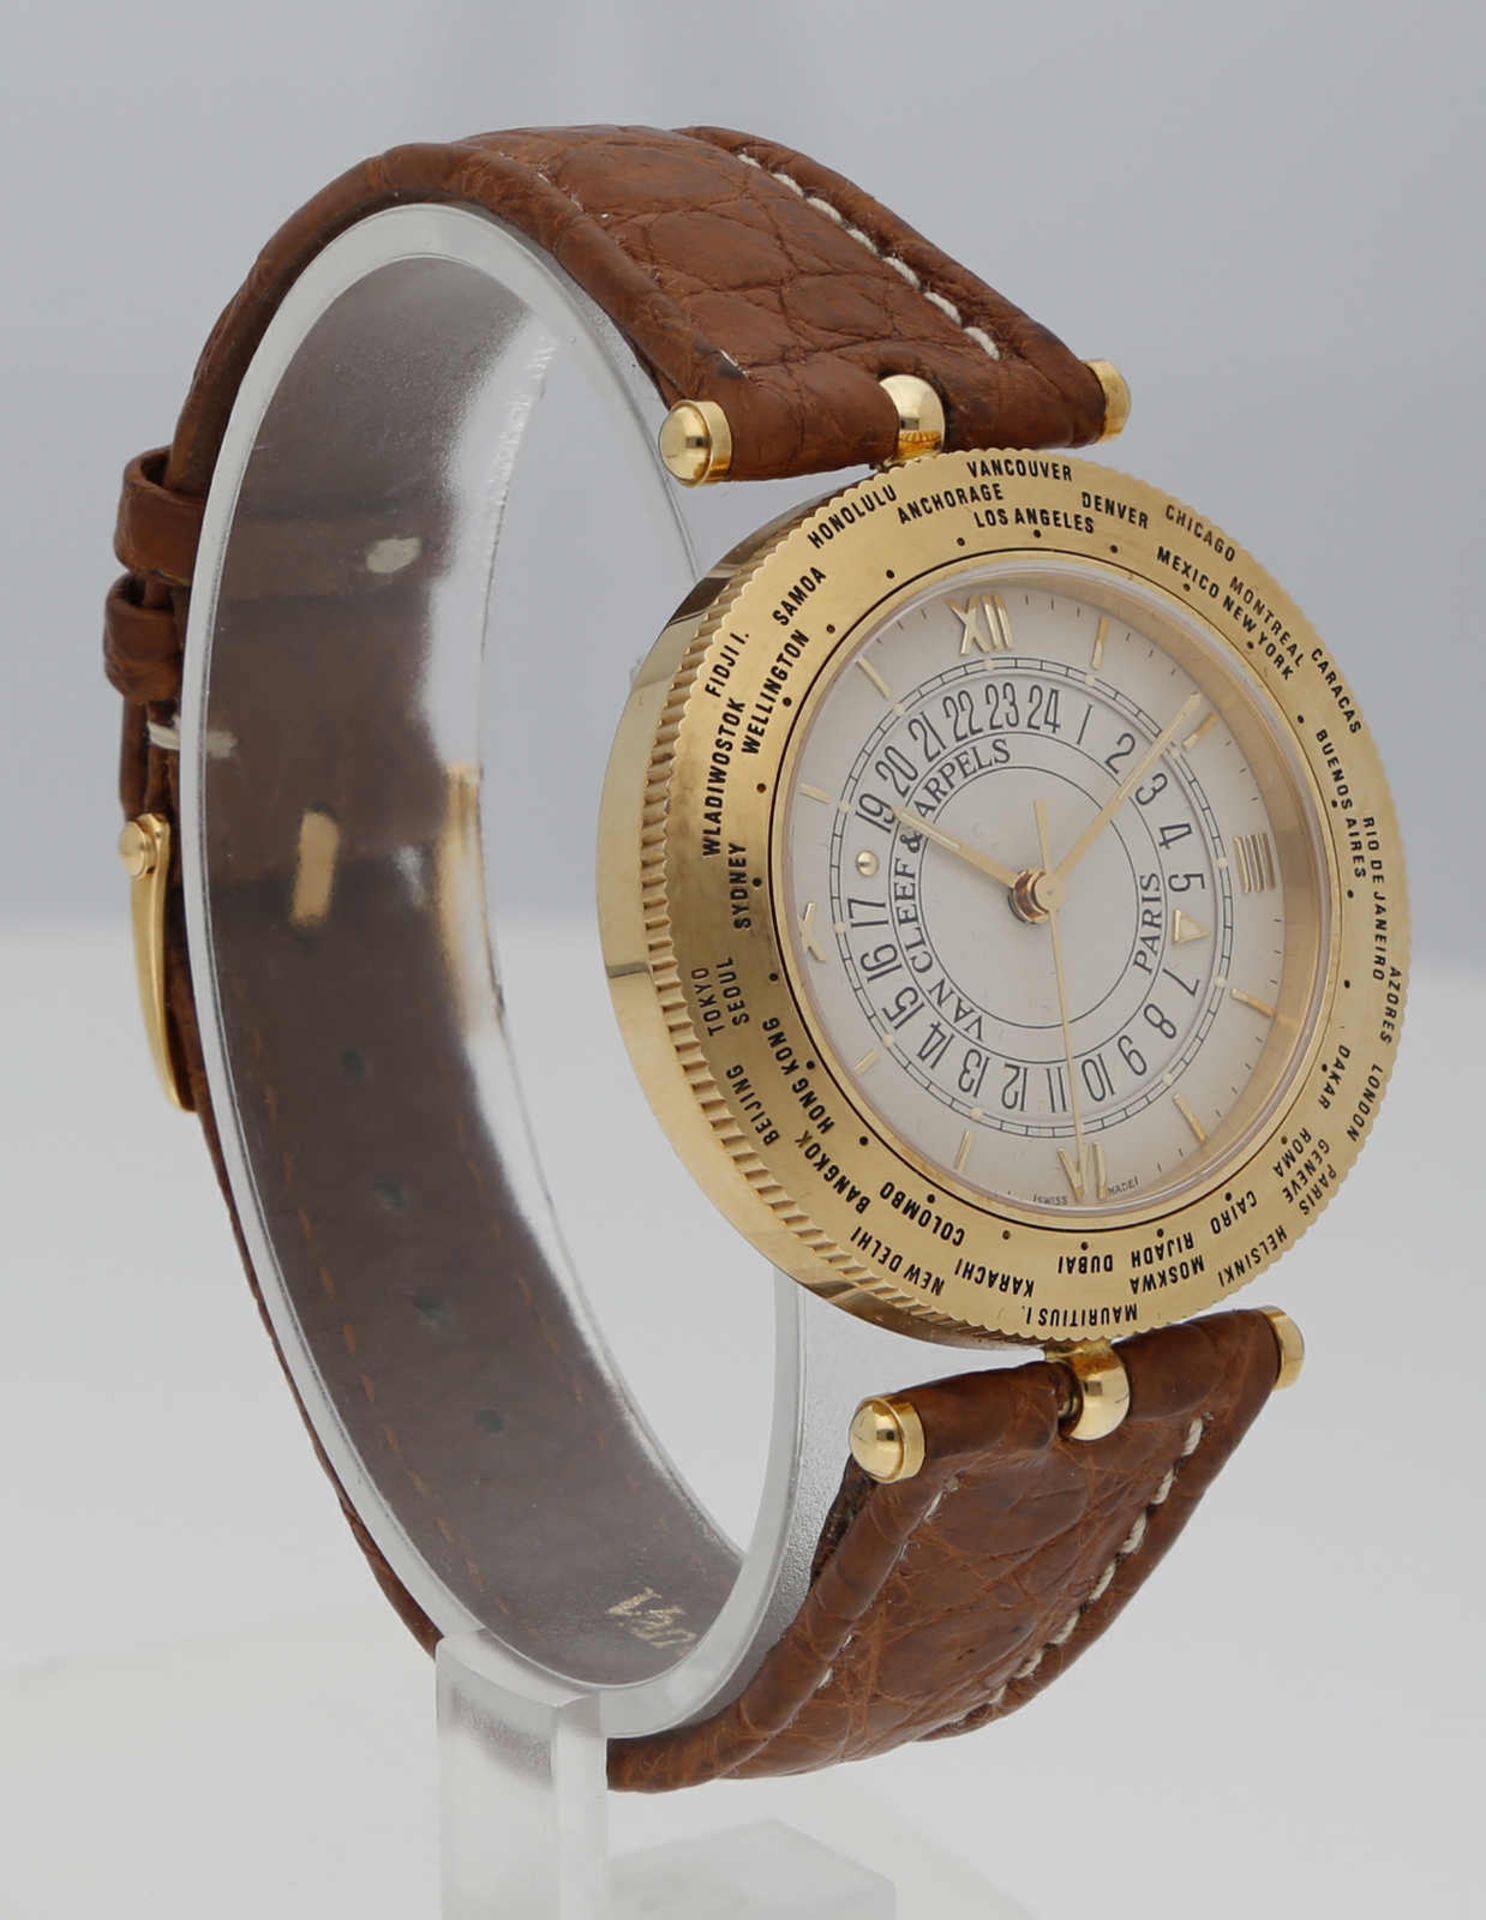 VAN CLEEF & ARPELS Traveler World Time Watch Nr. 15, Gelbgold 18K, Referenz 44825, Durchmesser 36 - Bild 2 aus 2